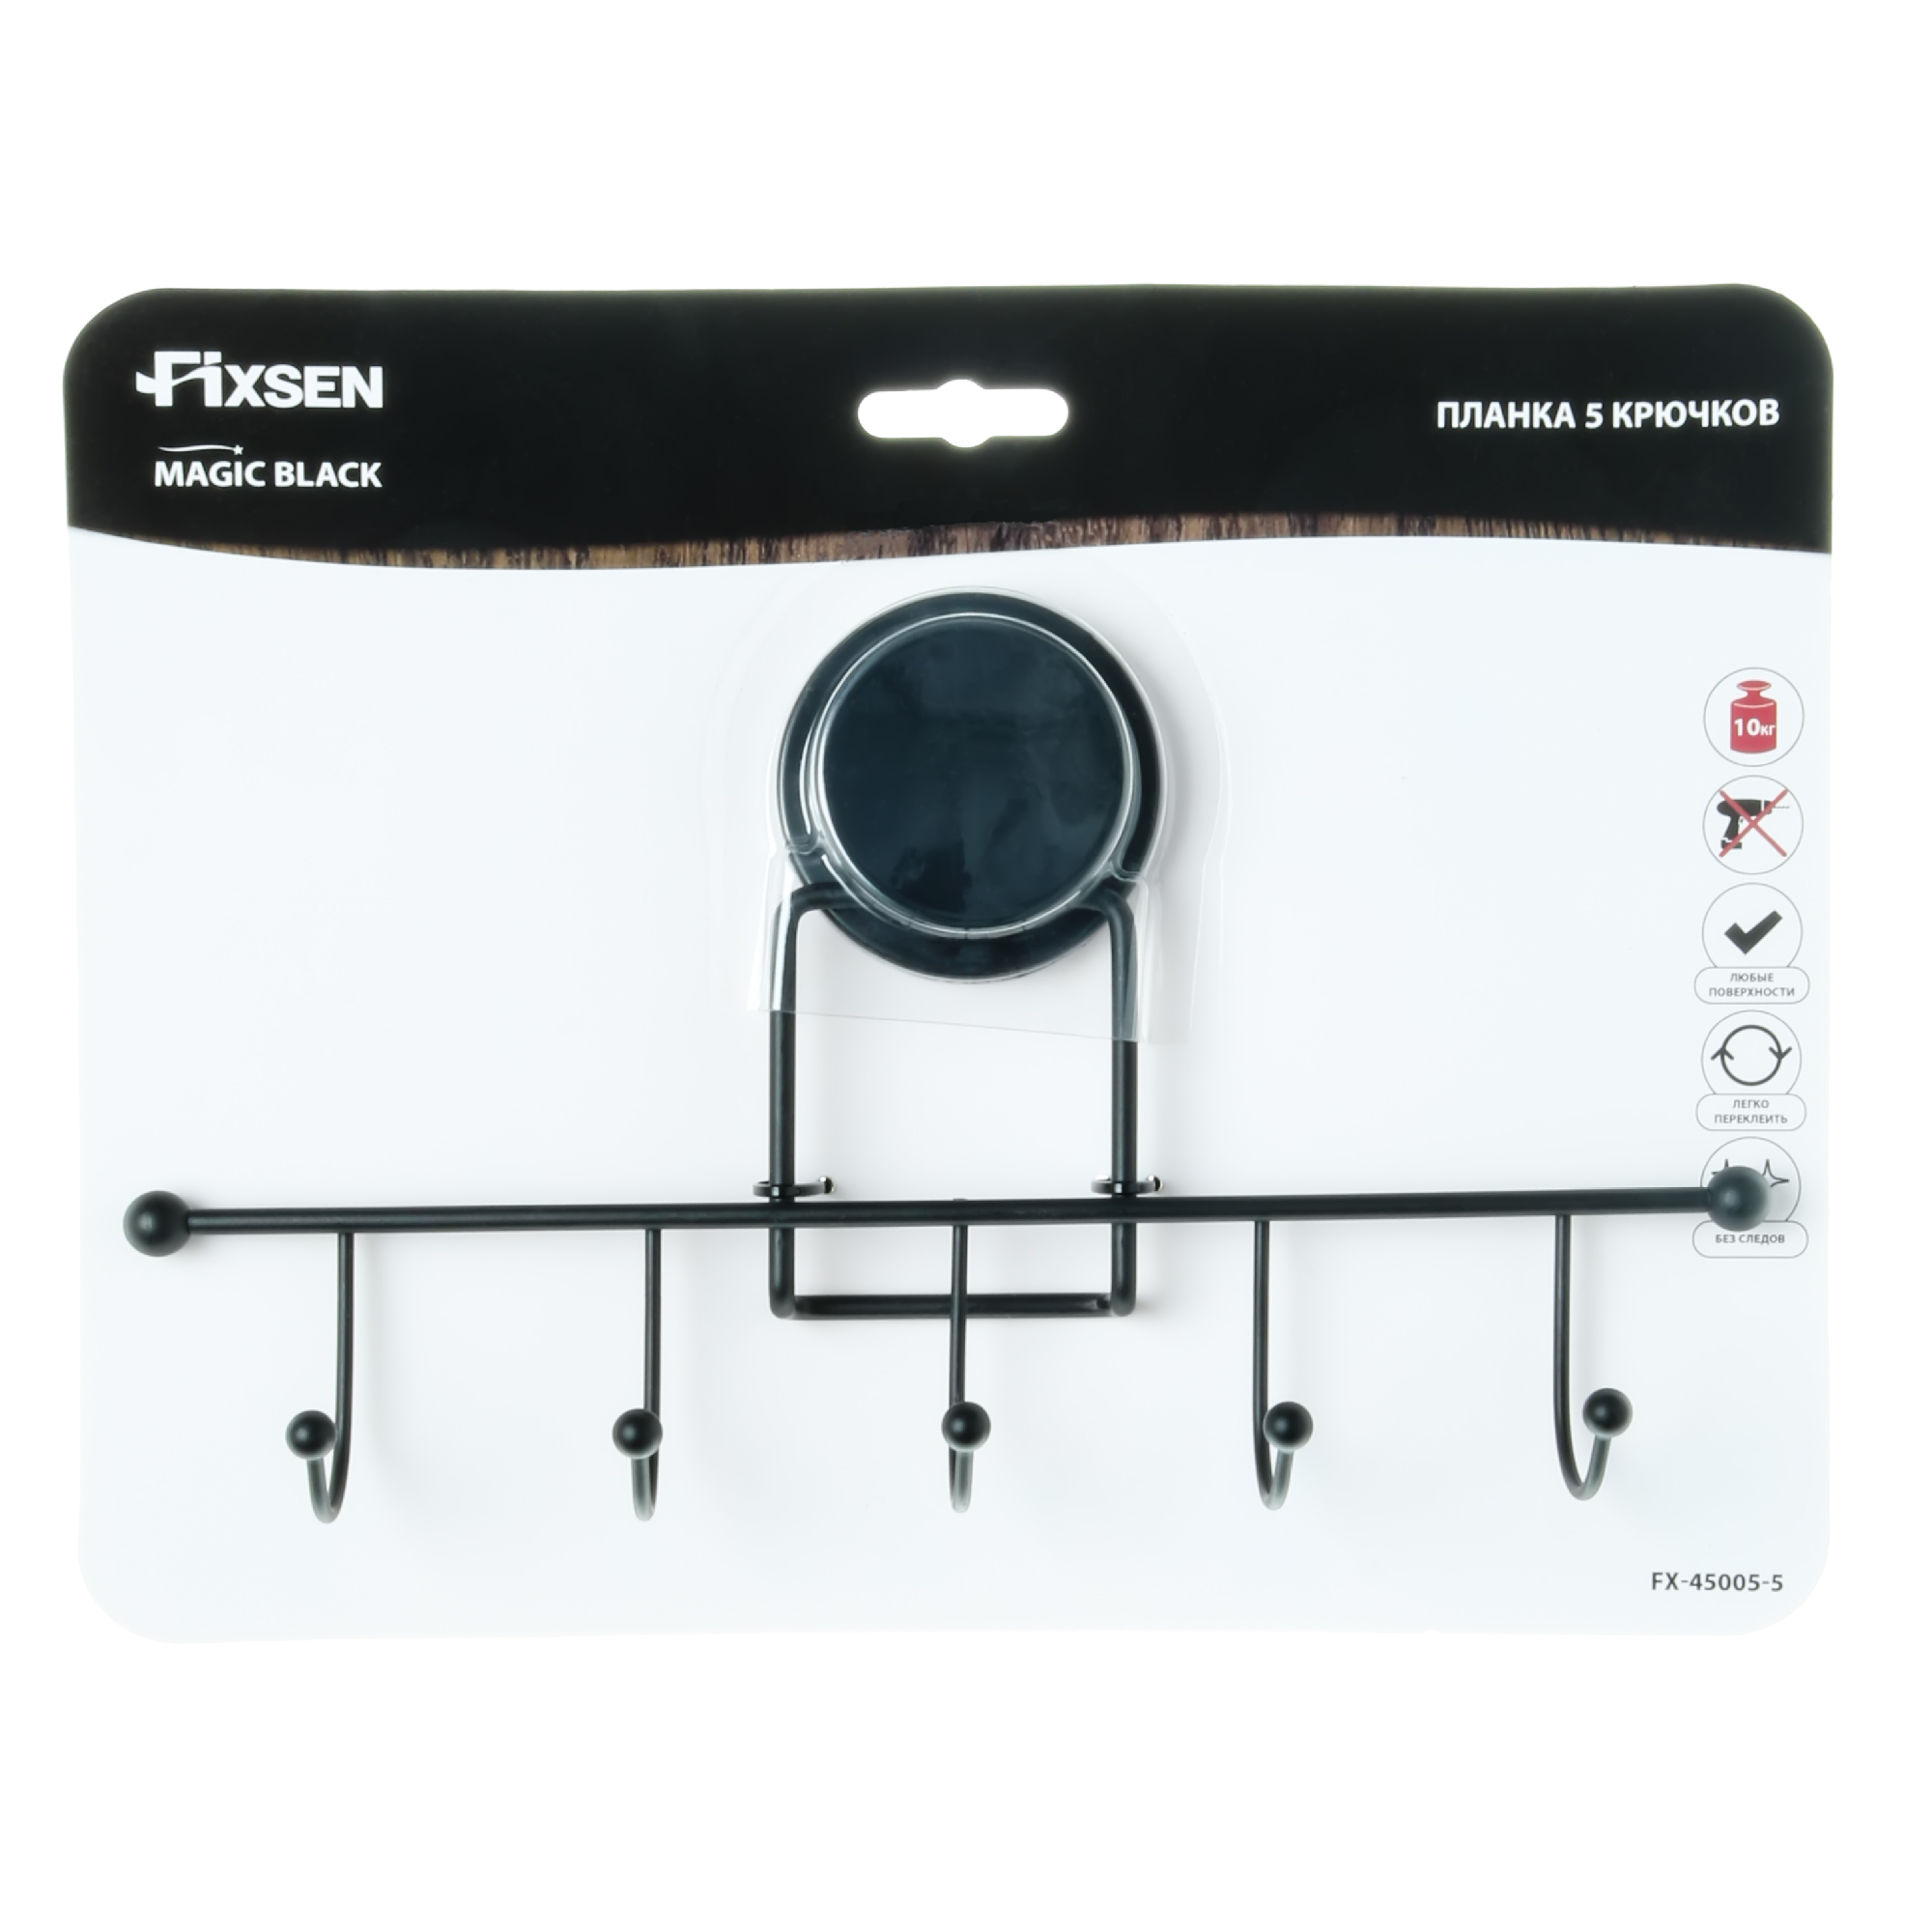 Планка Fixsen 5 крючков Magic Black FX-45005-5